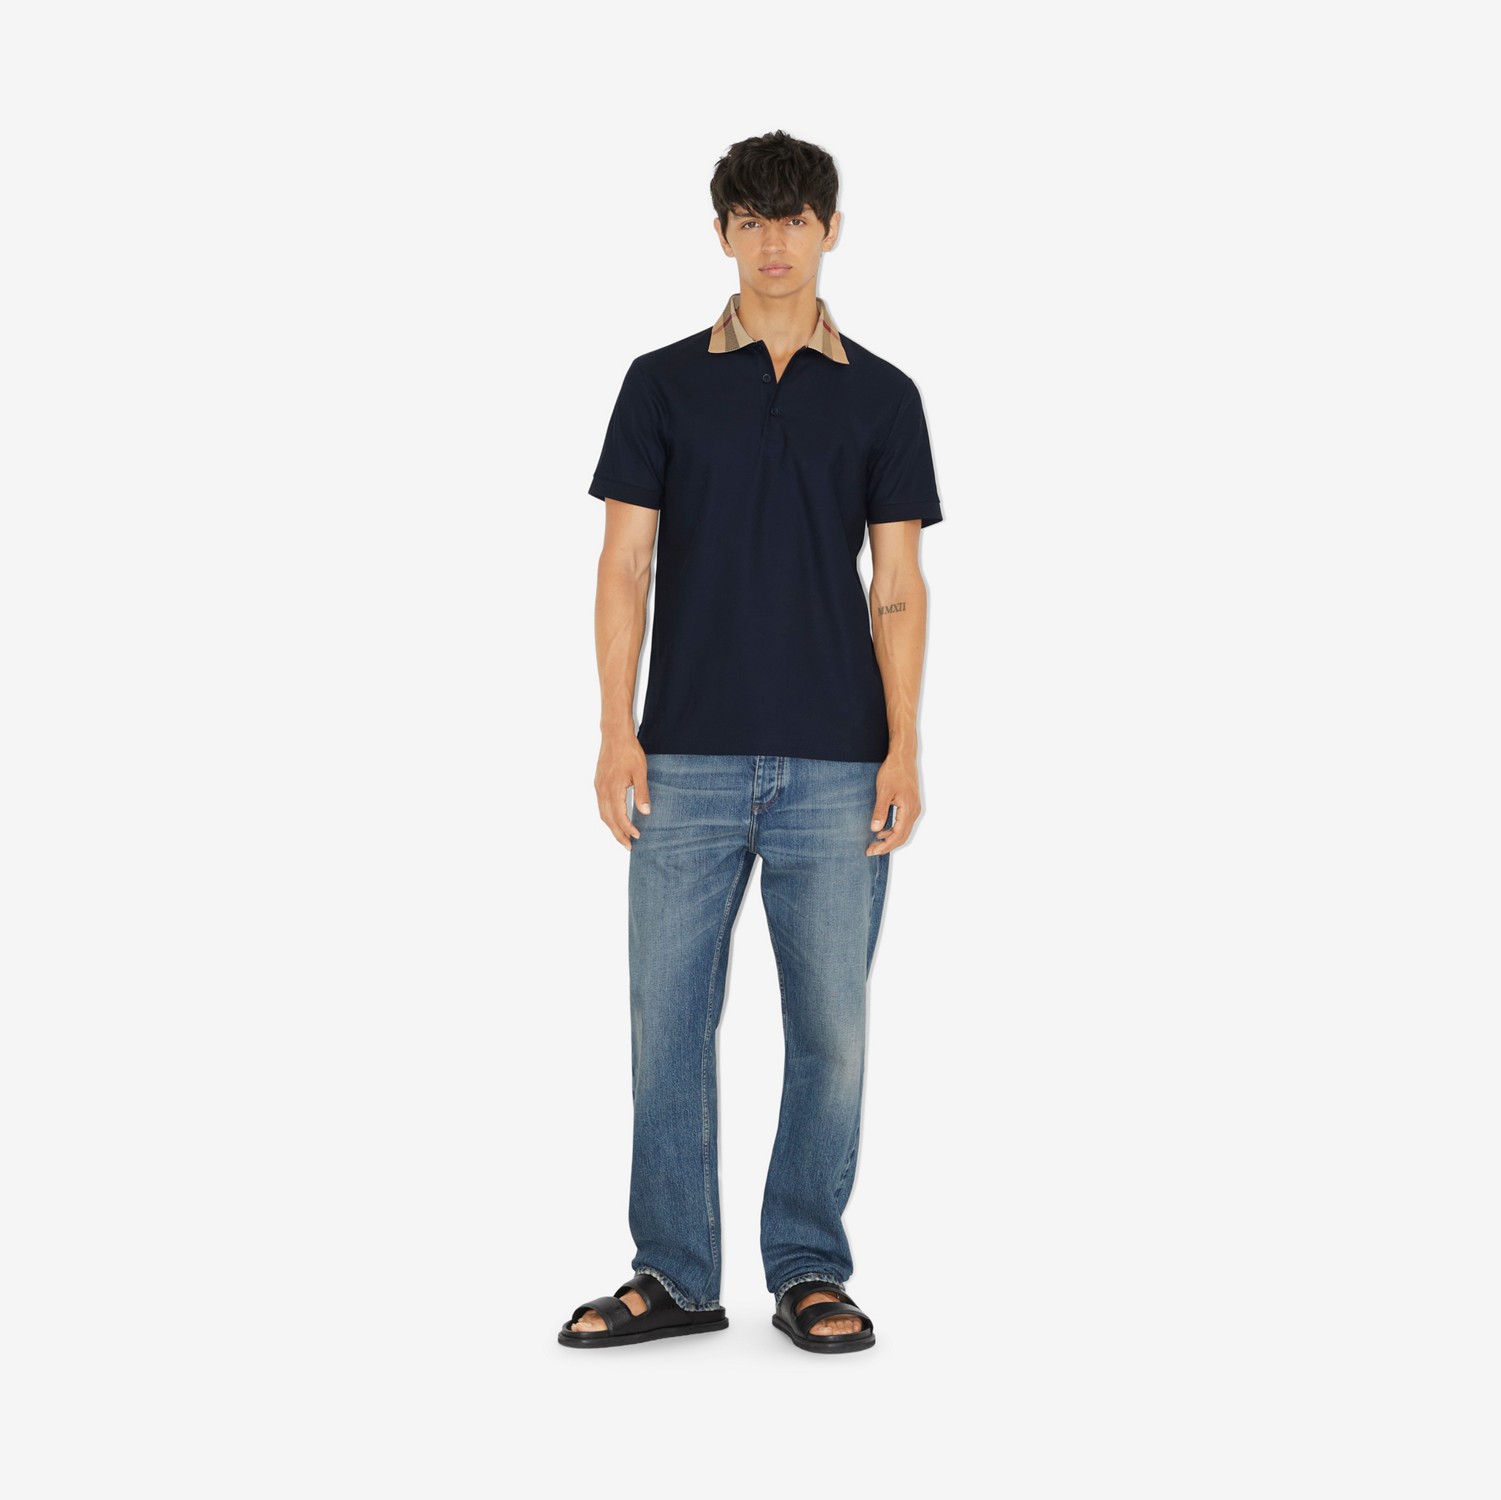 Poloshirt aus Baumwolle mit Check-Kragen (Rauchiges Marineblau) - Herren | Burberry®